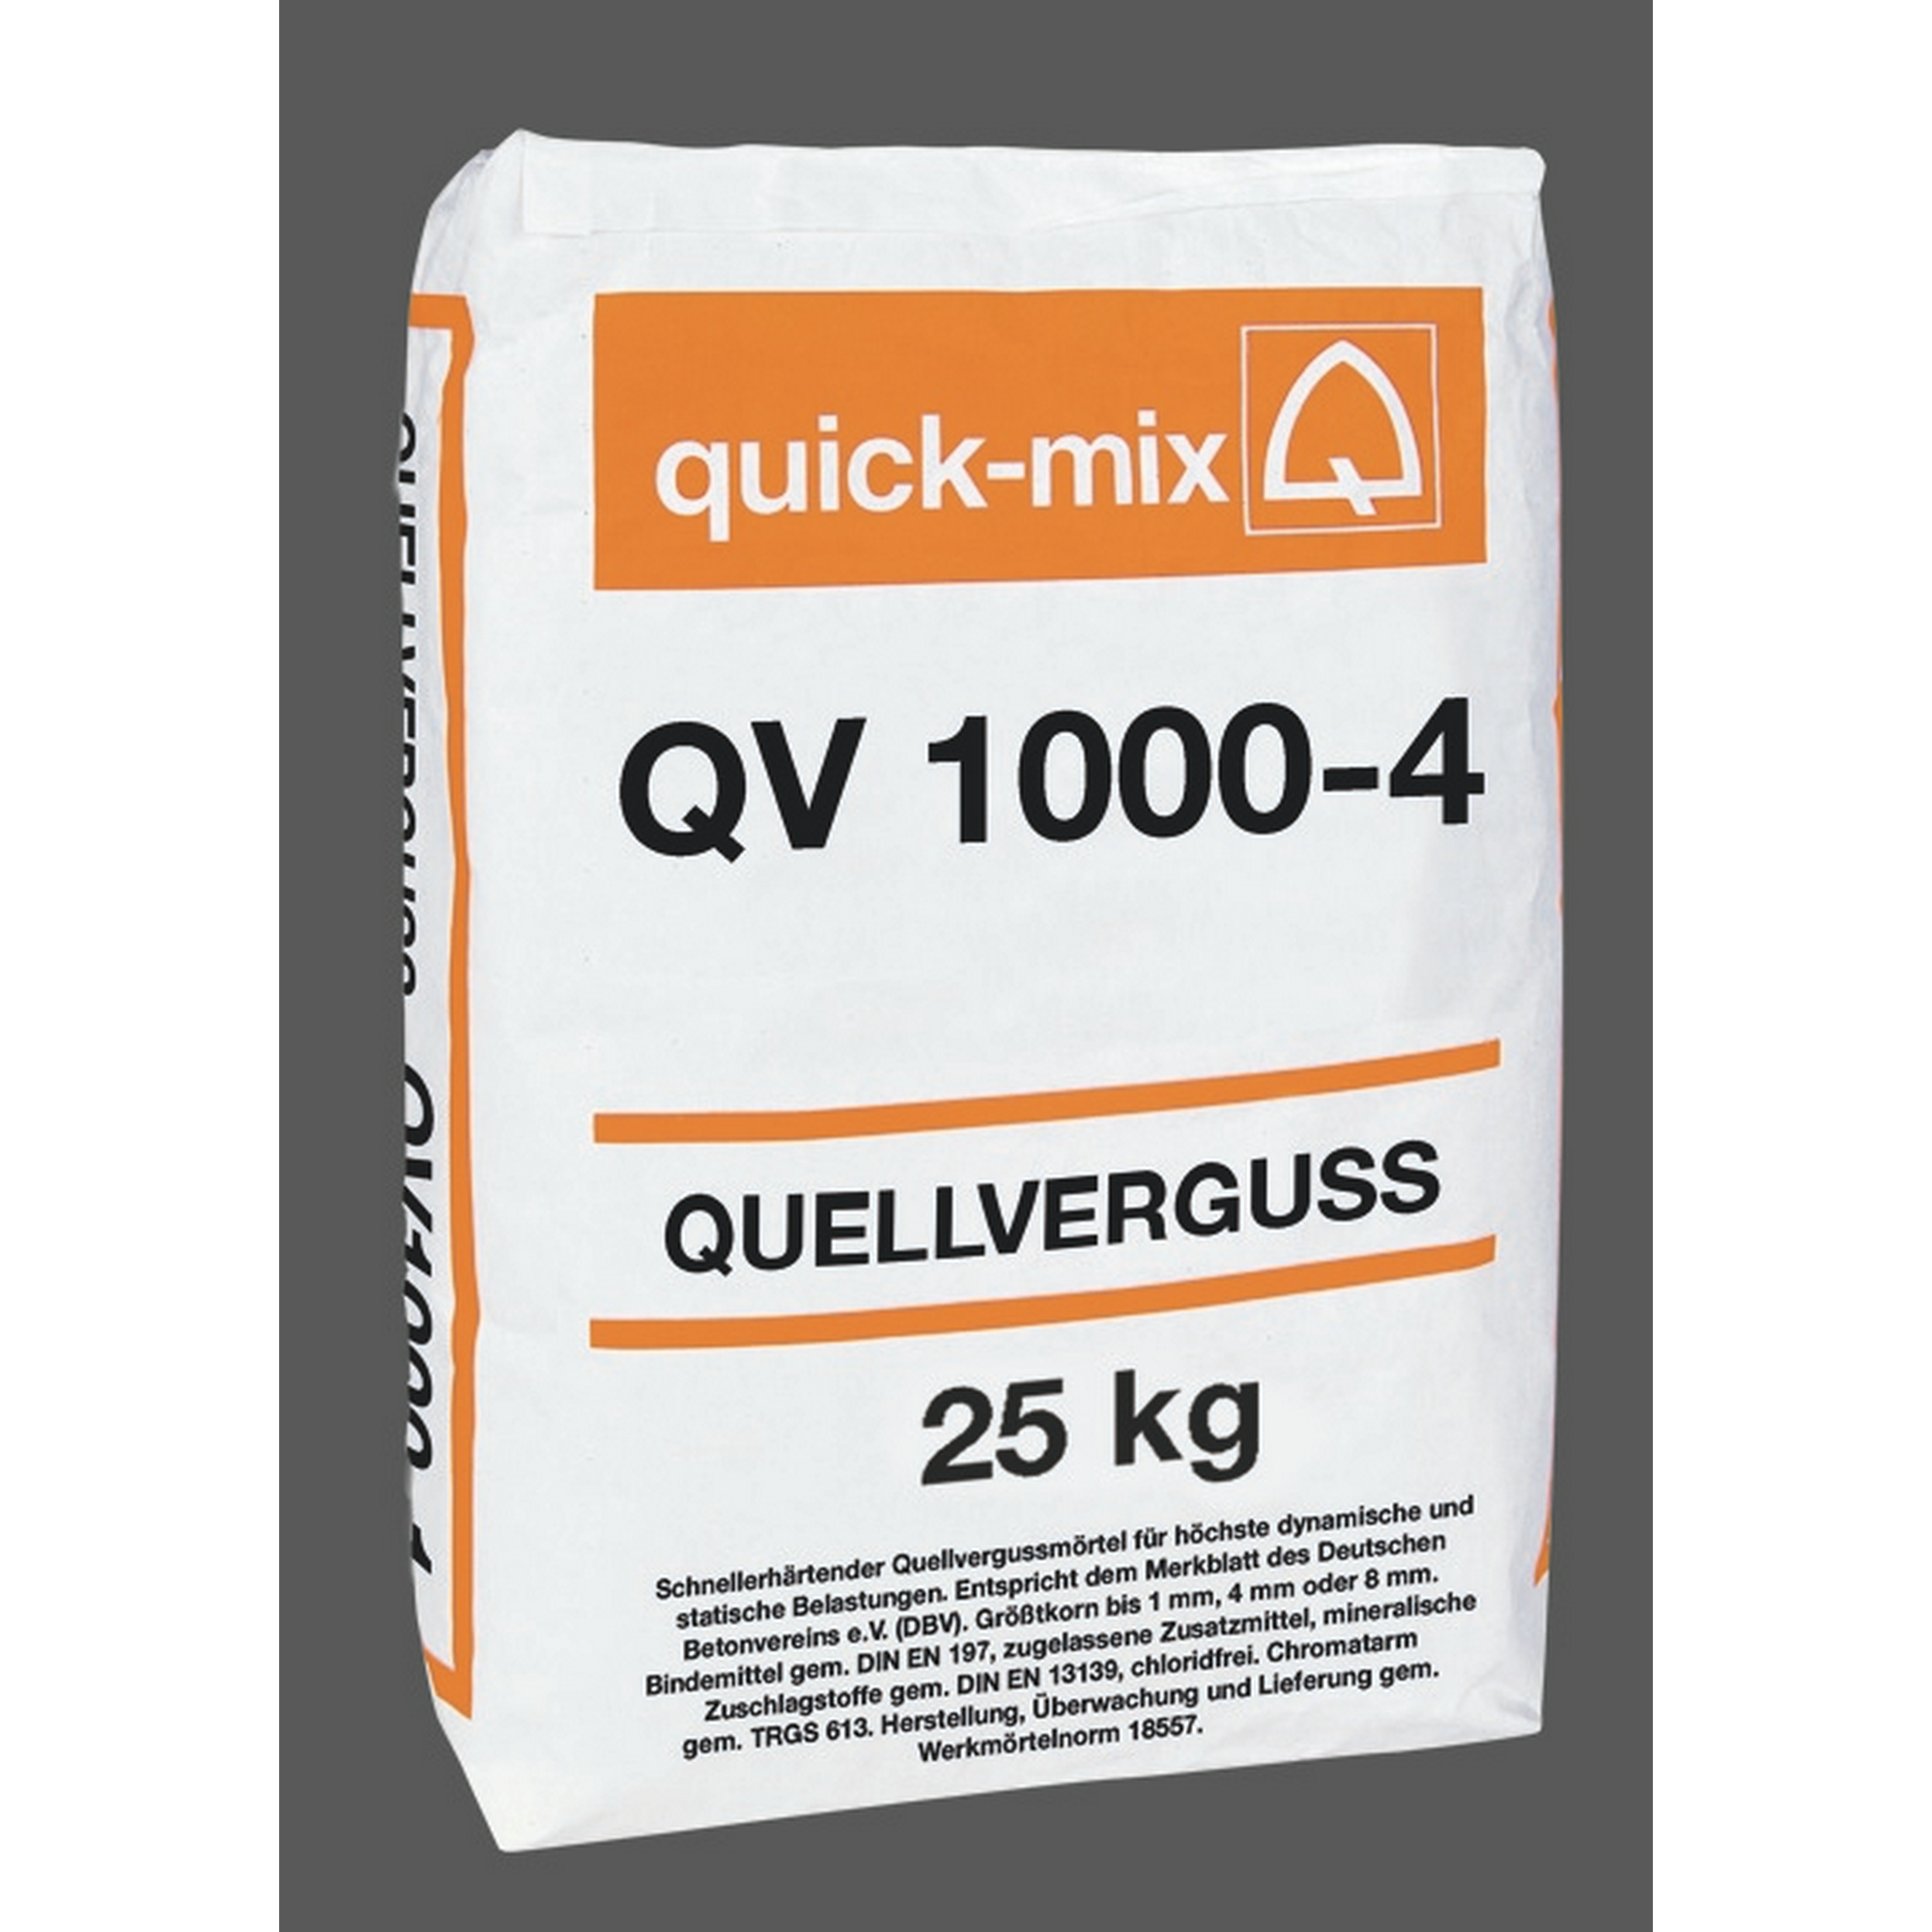 Quellvergussmörtel 'QV1000' 25 kg + product picture